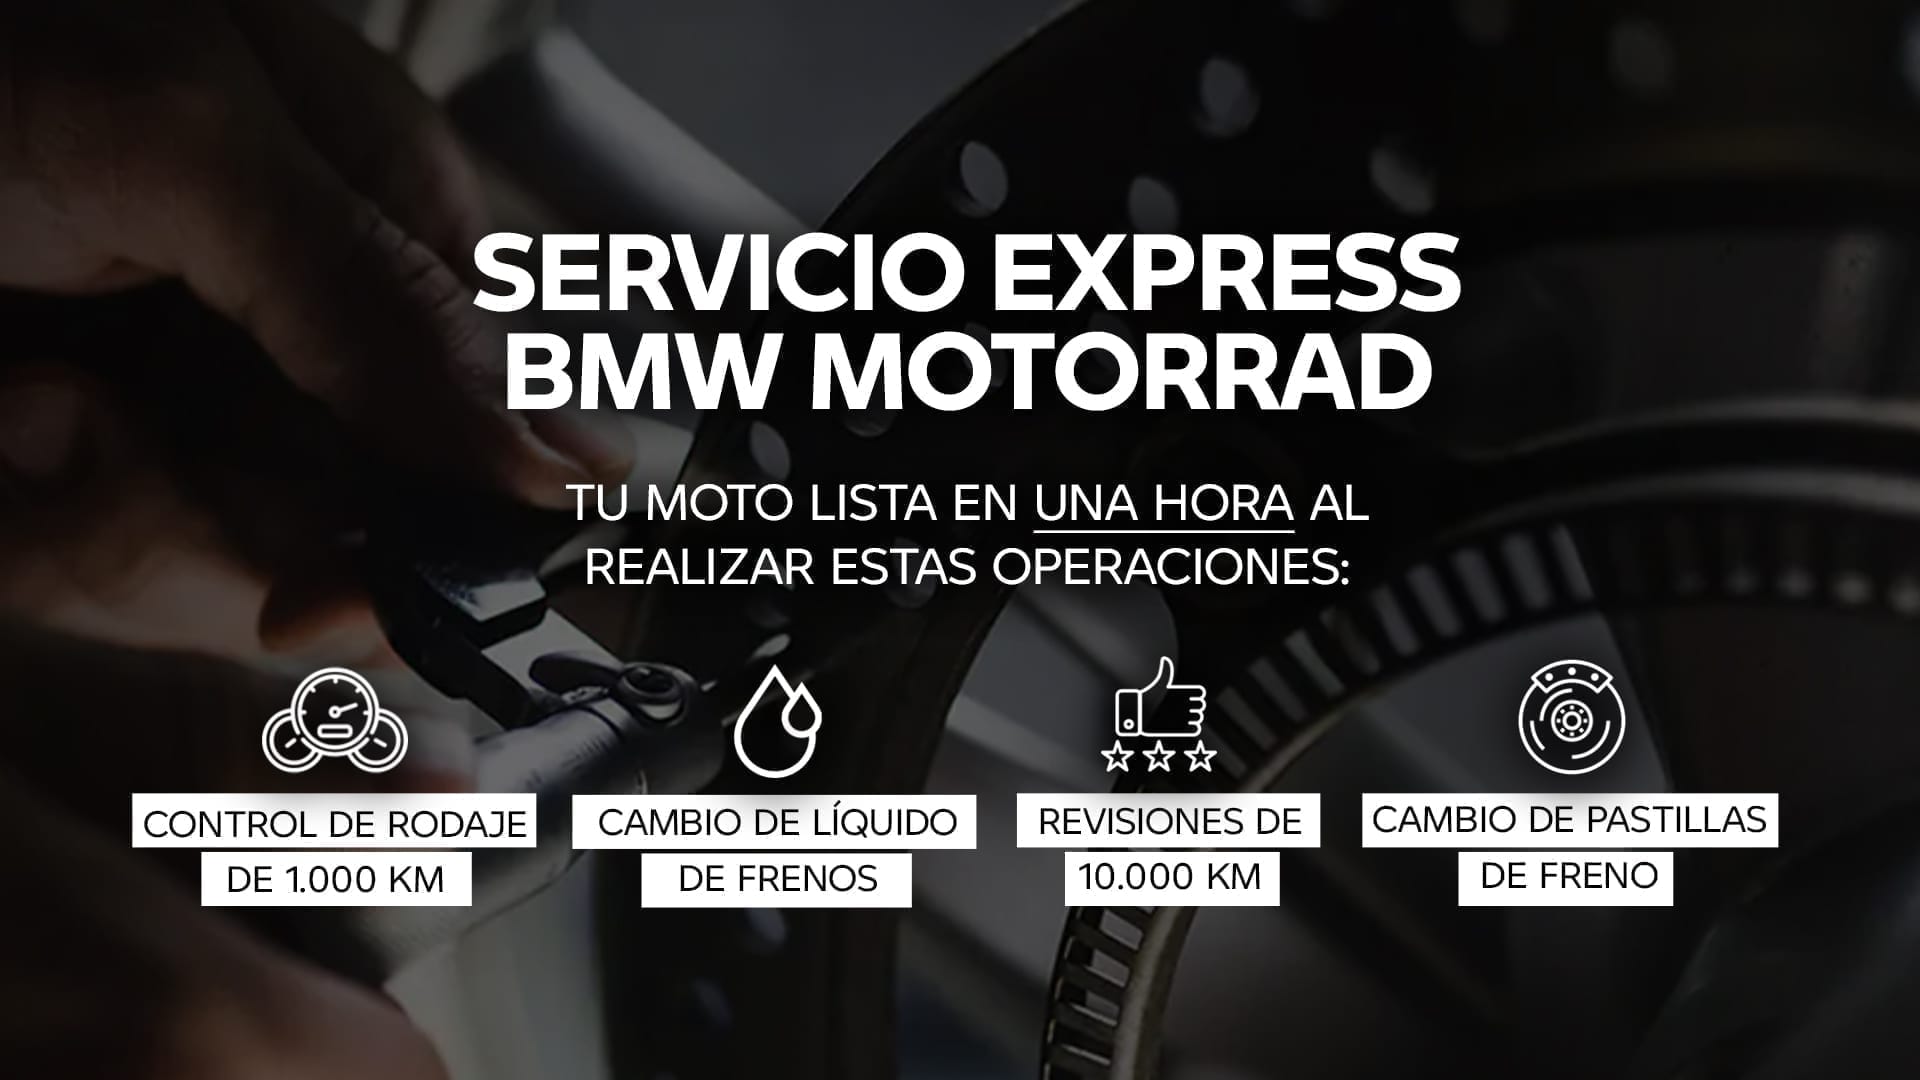 Servicio express BMW Motorrad